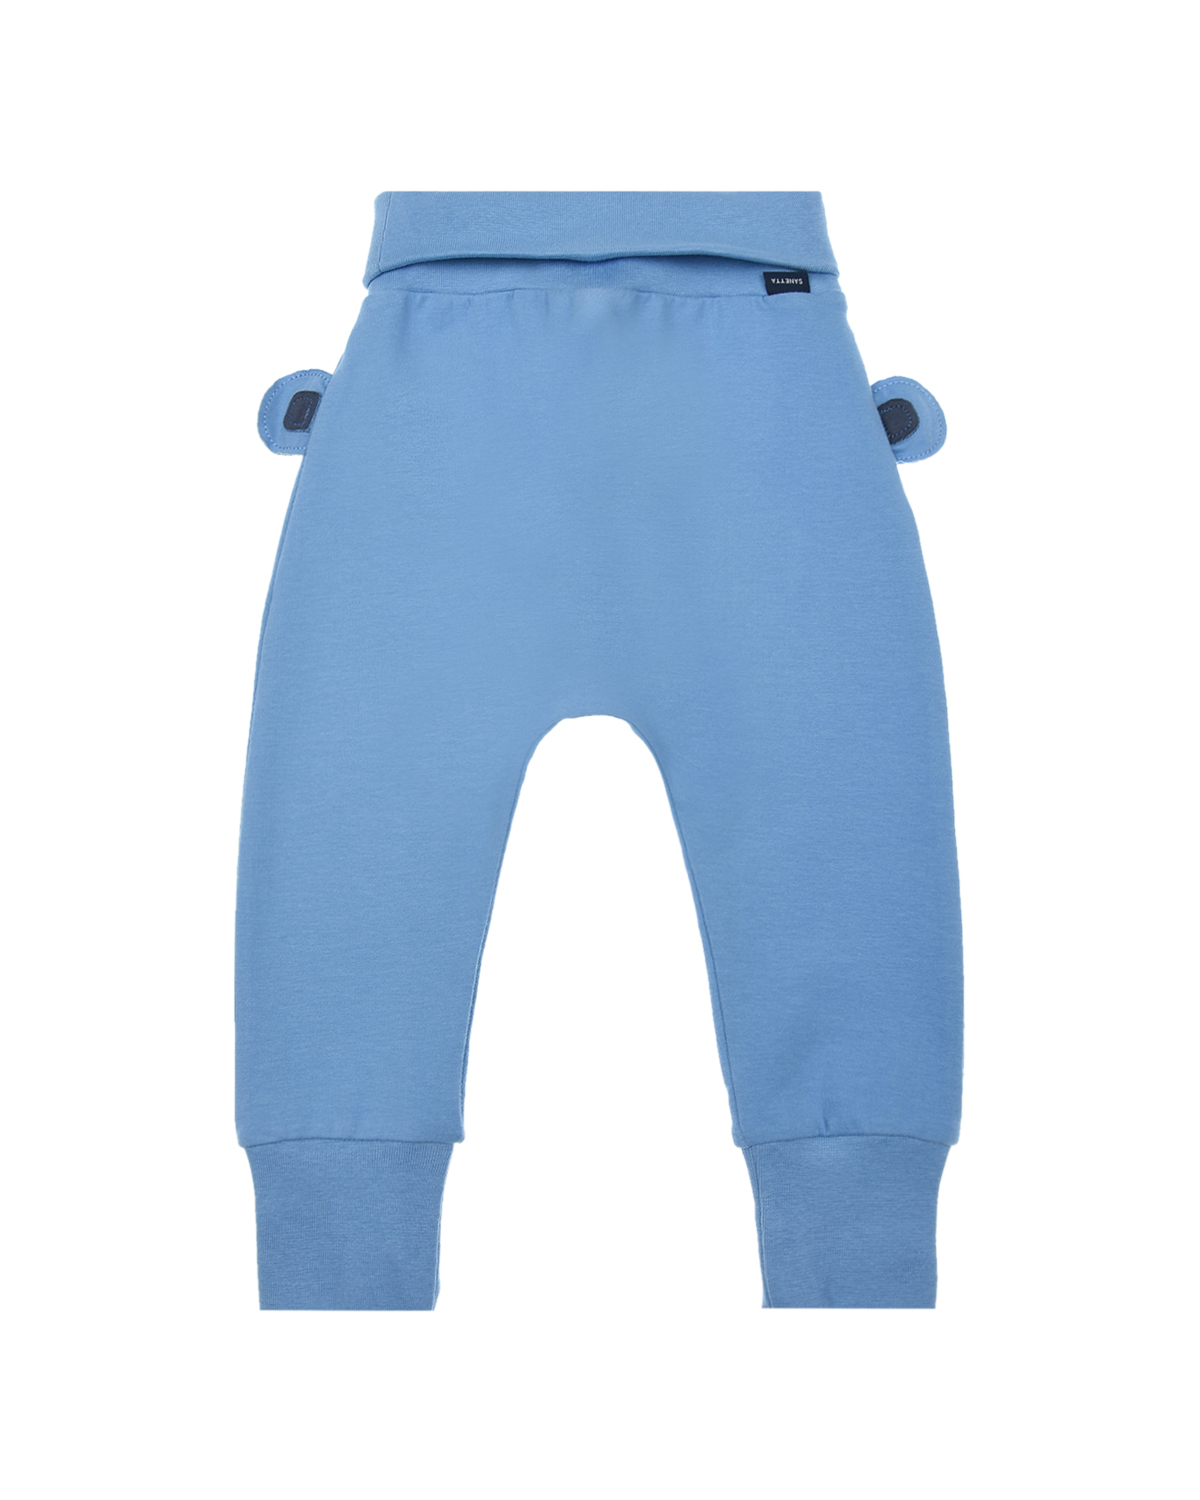 Синие спортивные брюки с принтом "обезьянка" Sanetta Kidswear детские, размер 68, цвет синий - фото 1